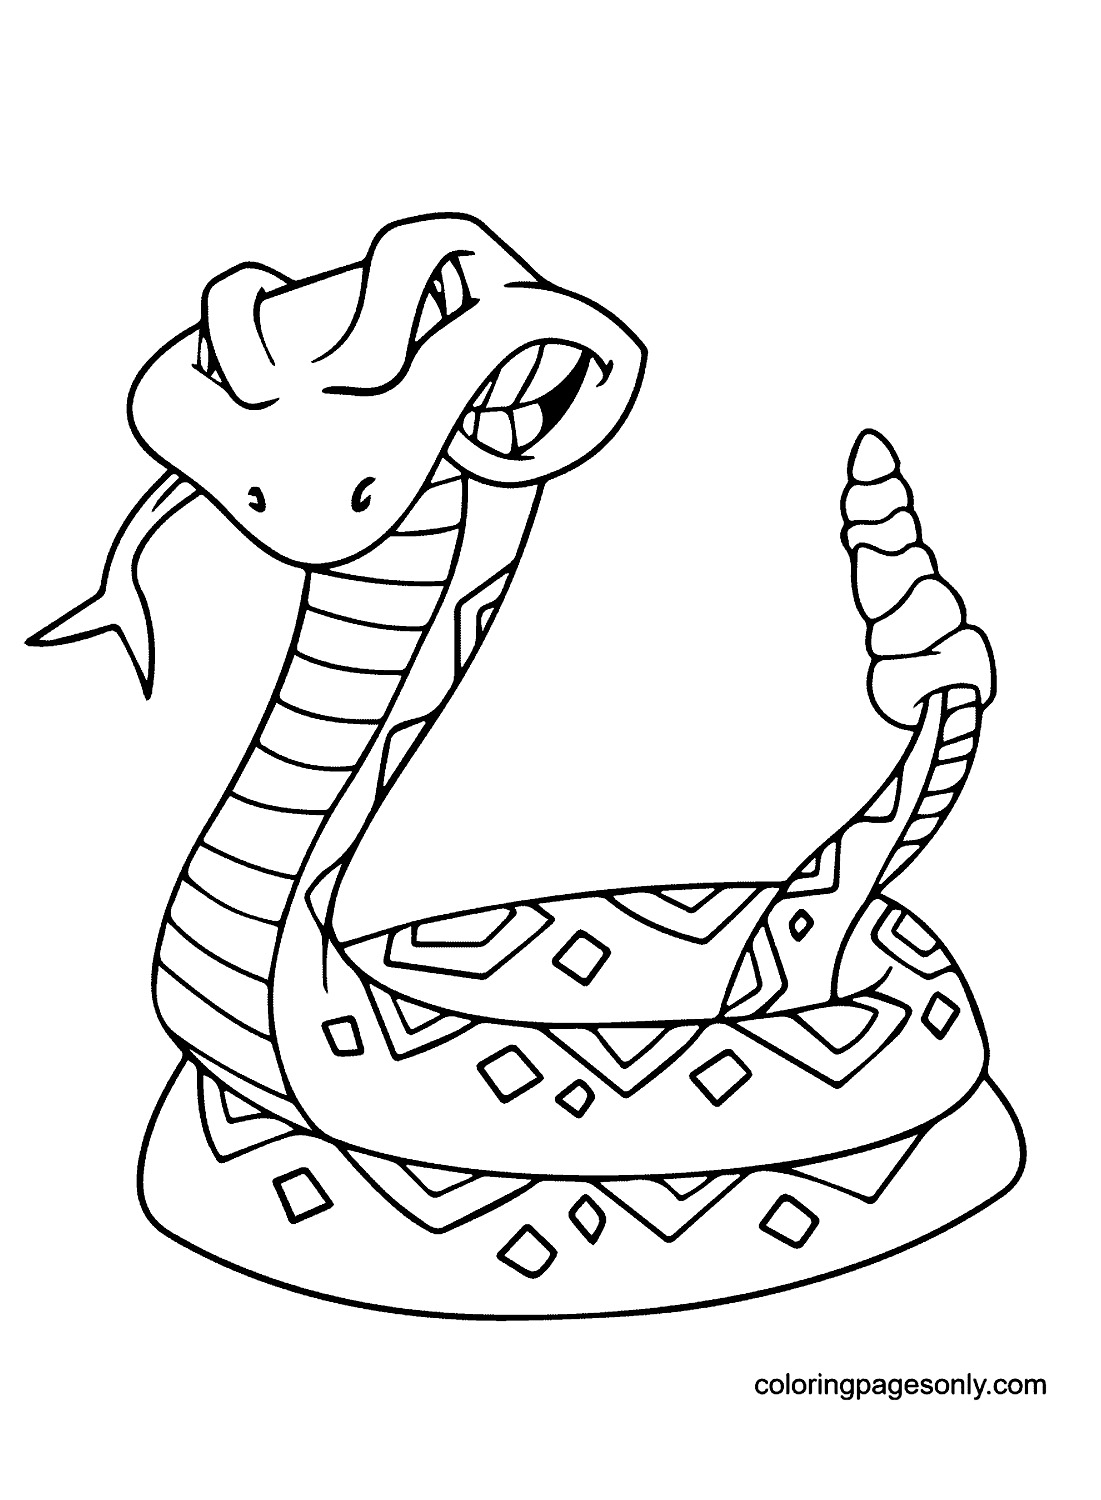 Klapperschlange von Rattlesnake